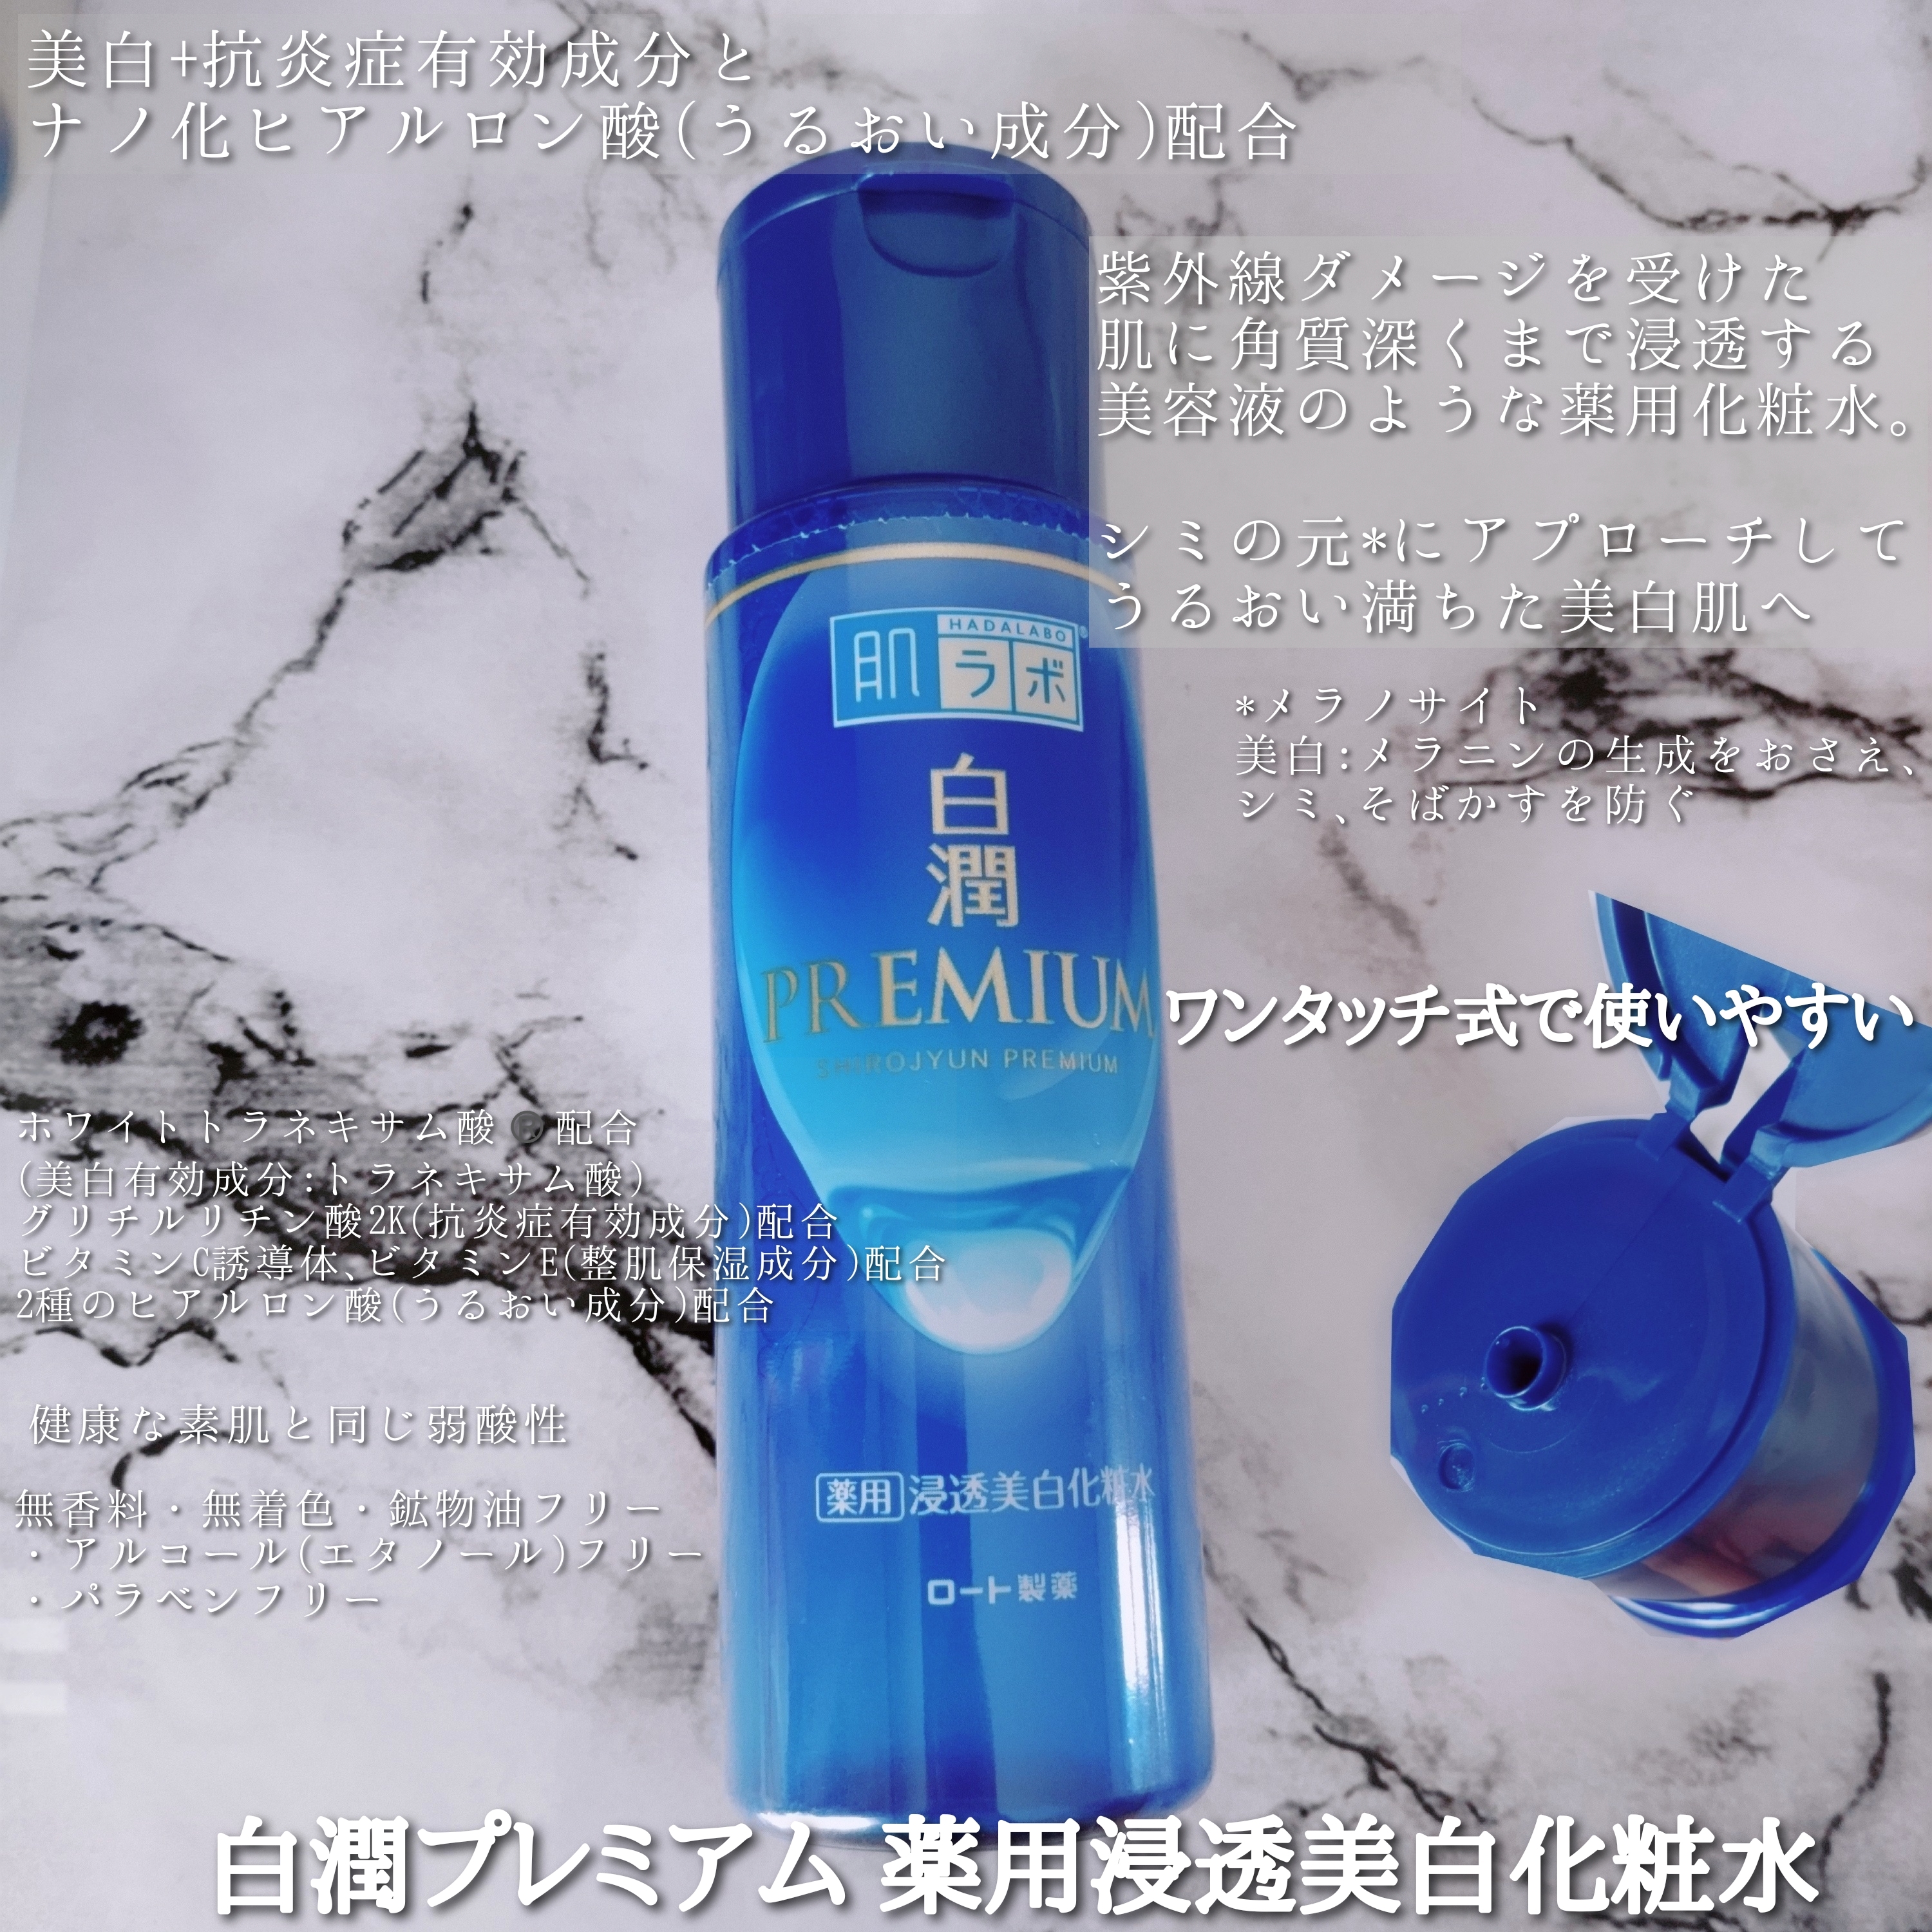 白潤プレミアム 薬用浸透美白化粧水を使ったYuKaRi♡さんのクチコミ画像2